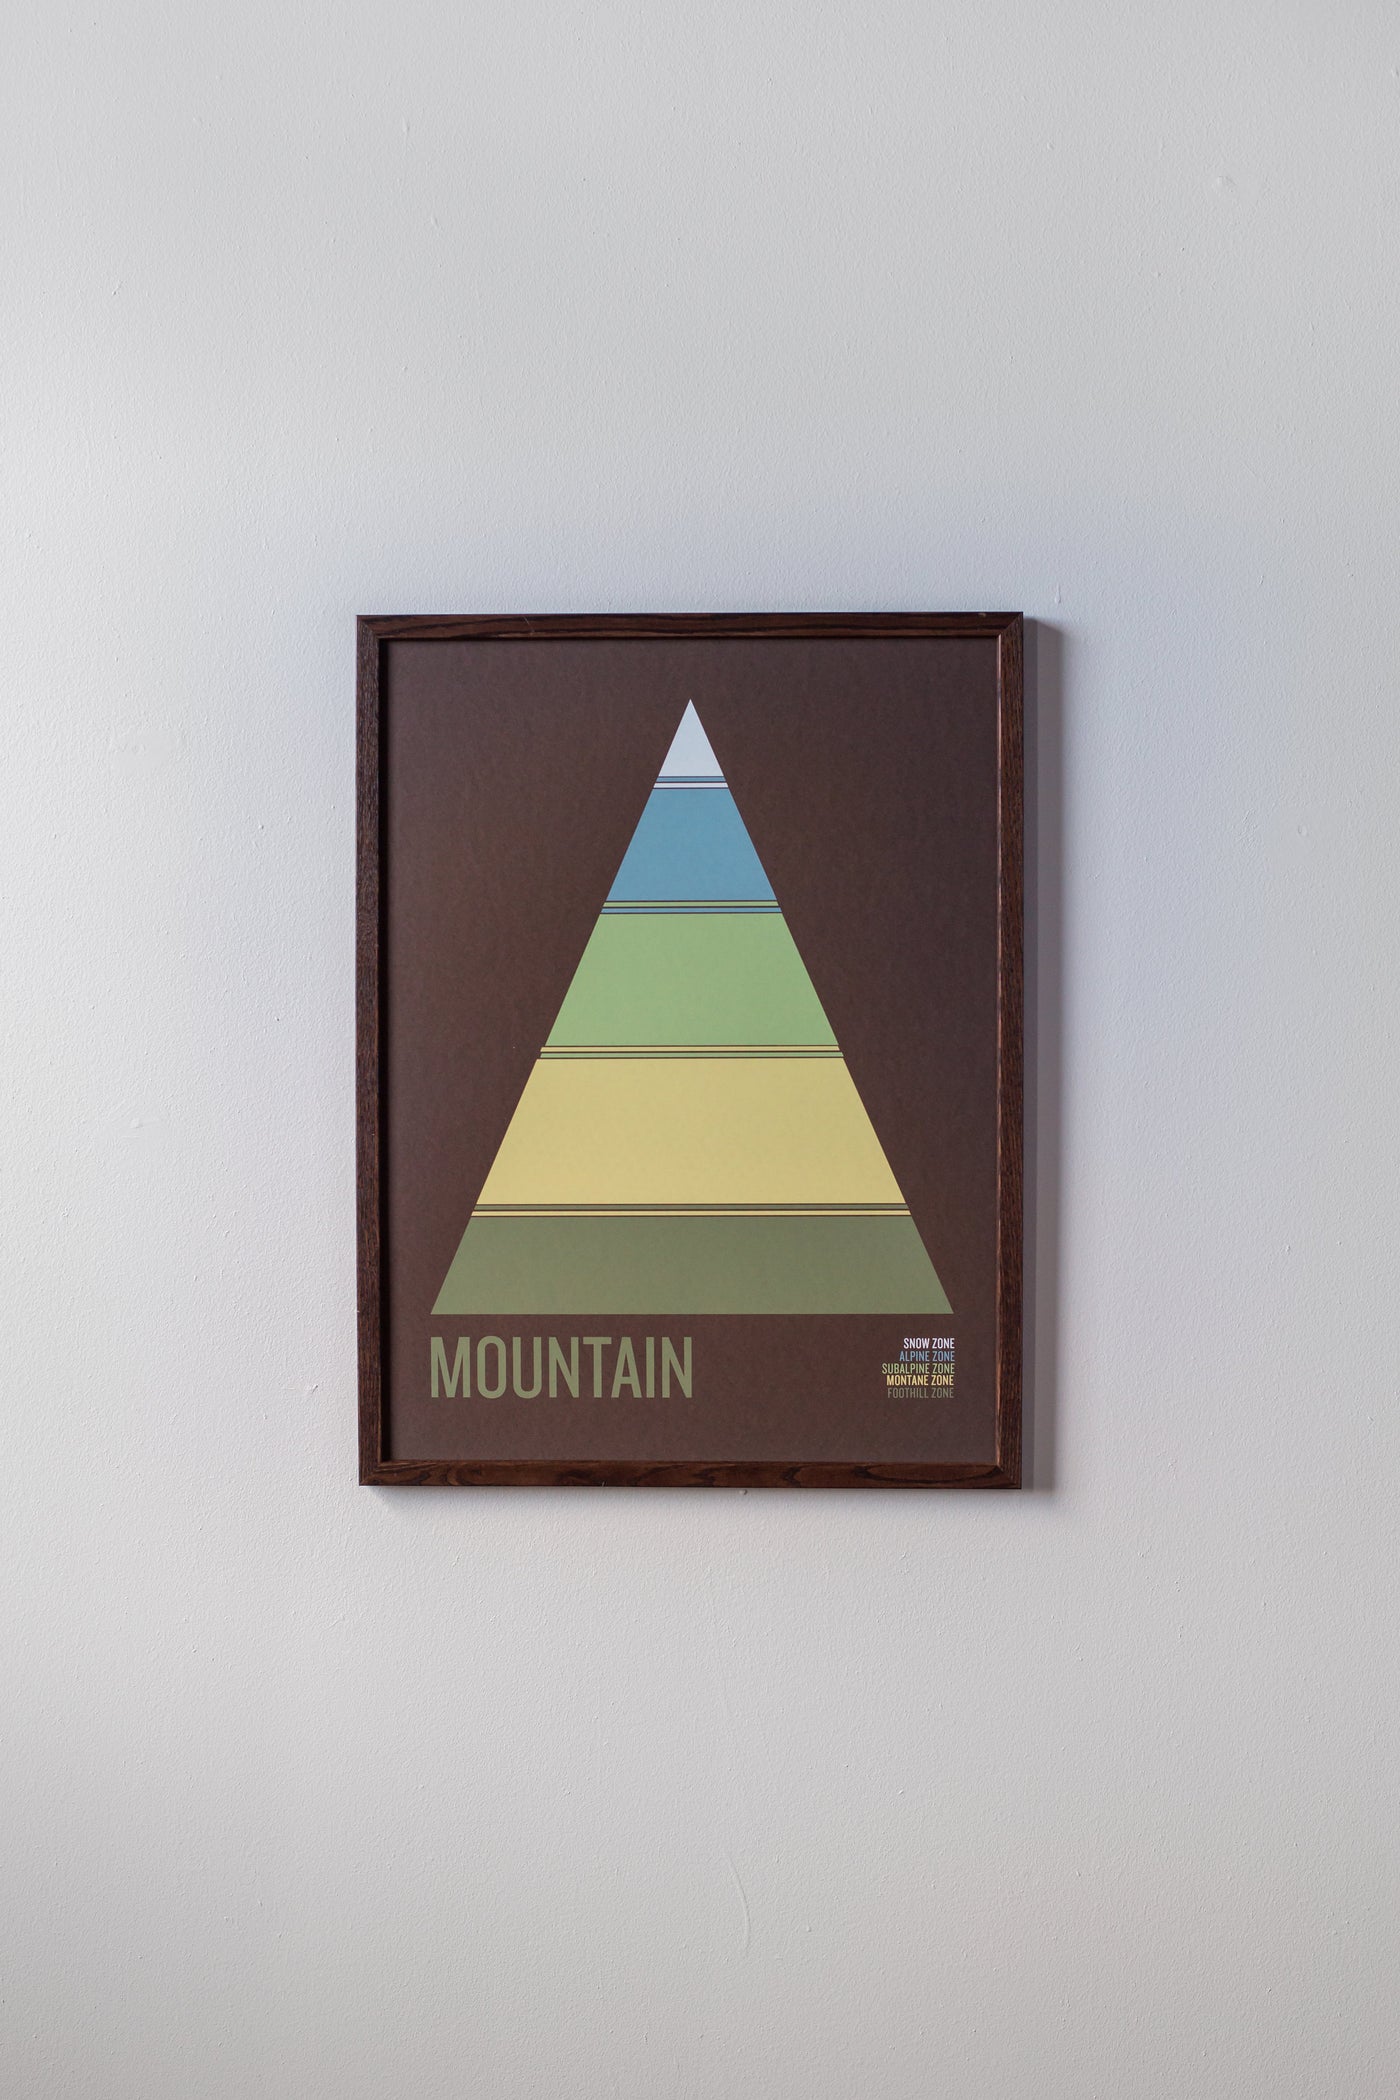 Mountain Print by Brainstorm - Snow Zone, Alpine Zone, Subalpine Zone, Montane Zone, Foothill Zone